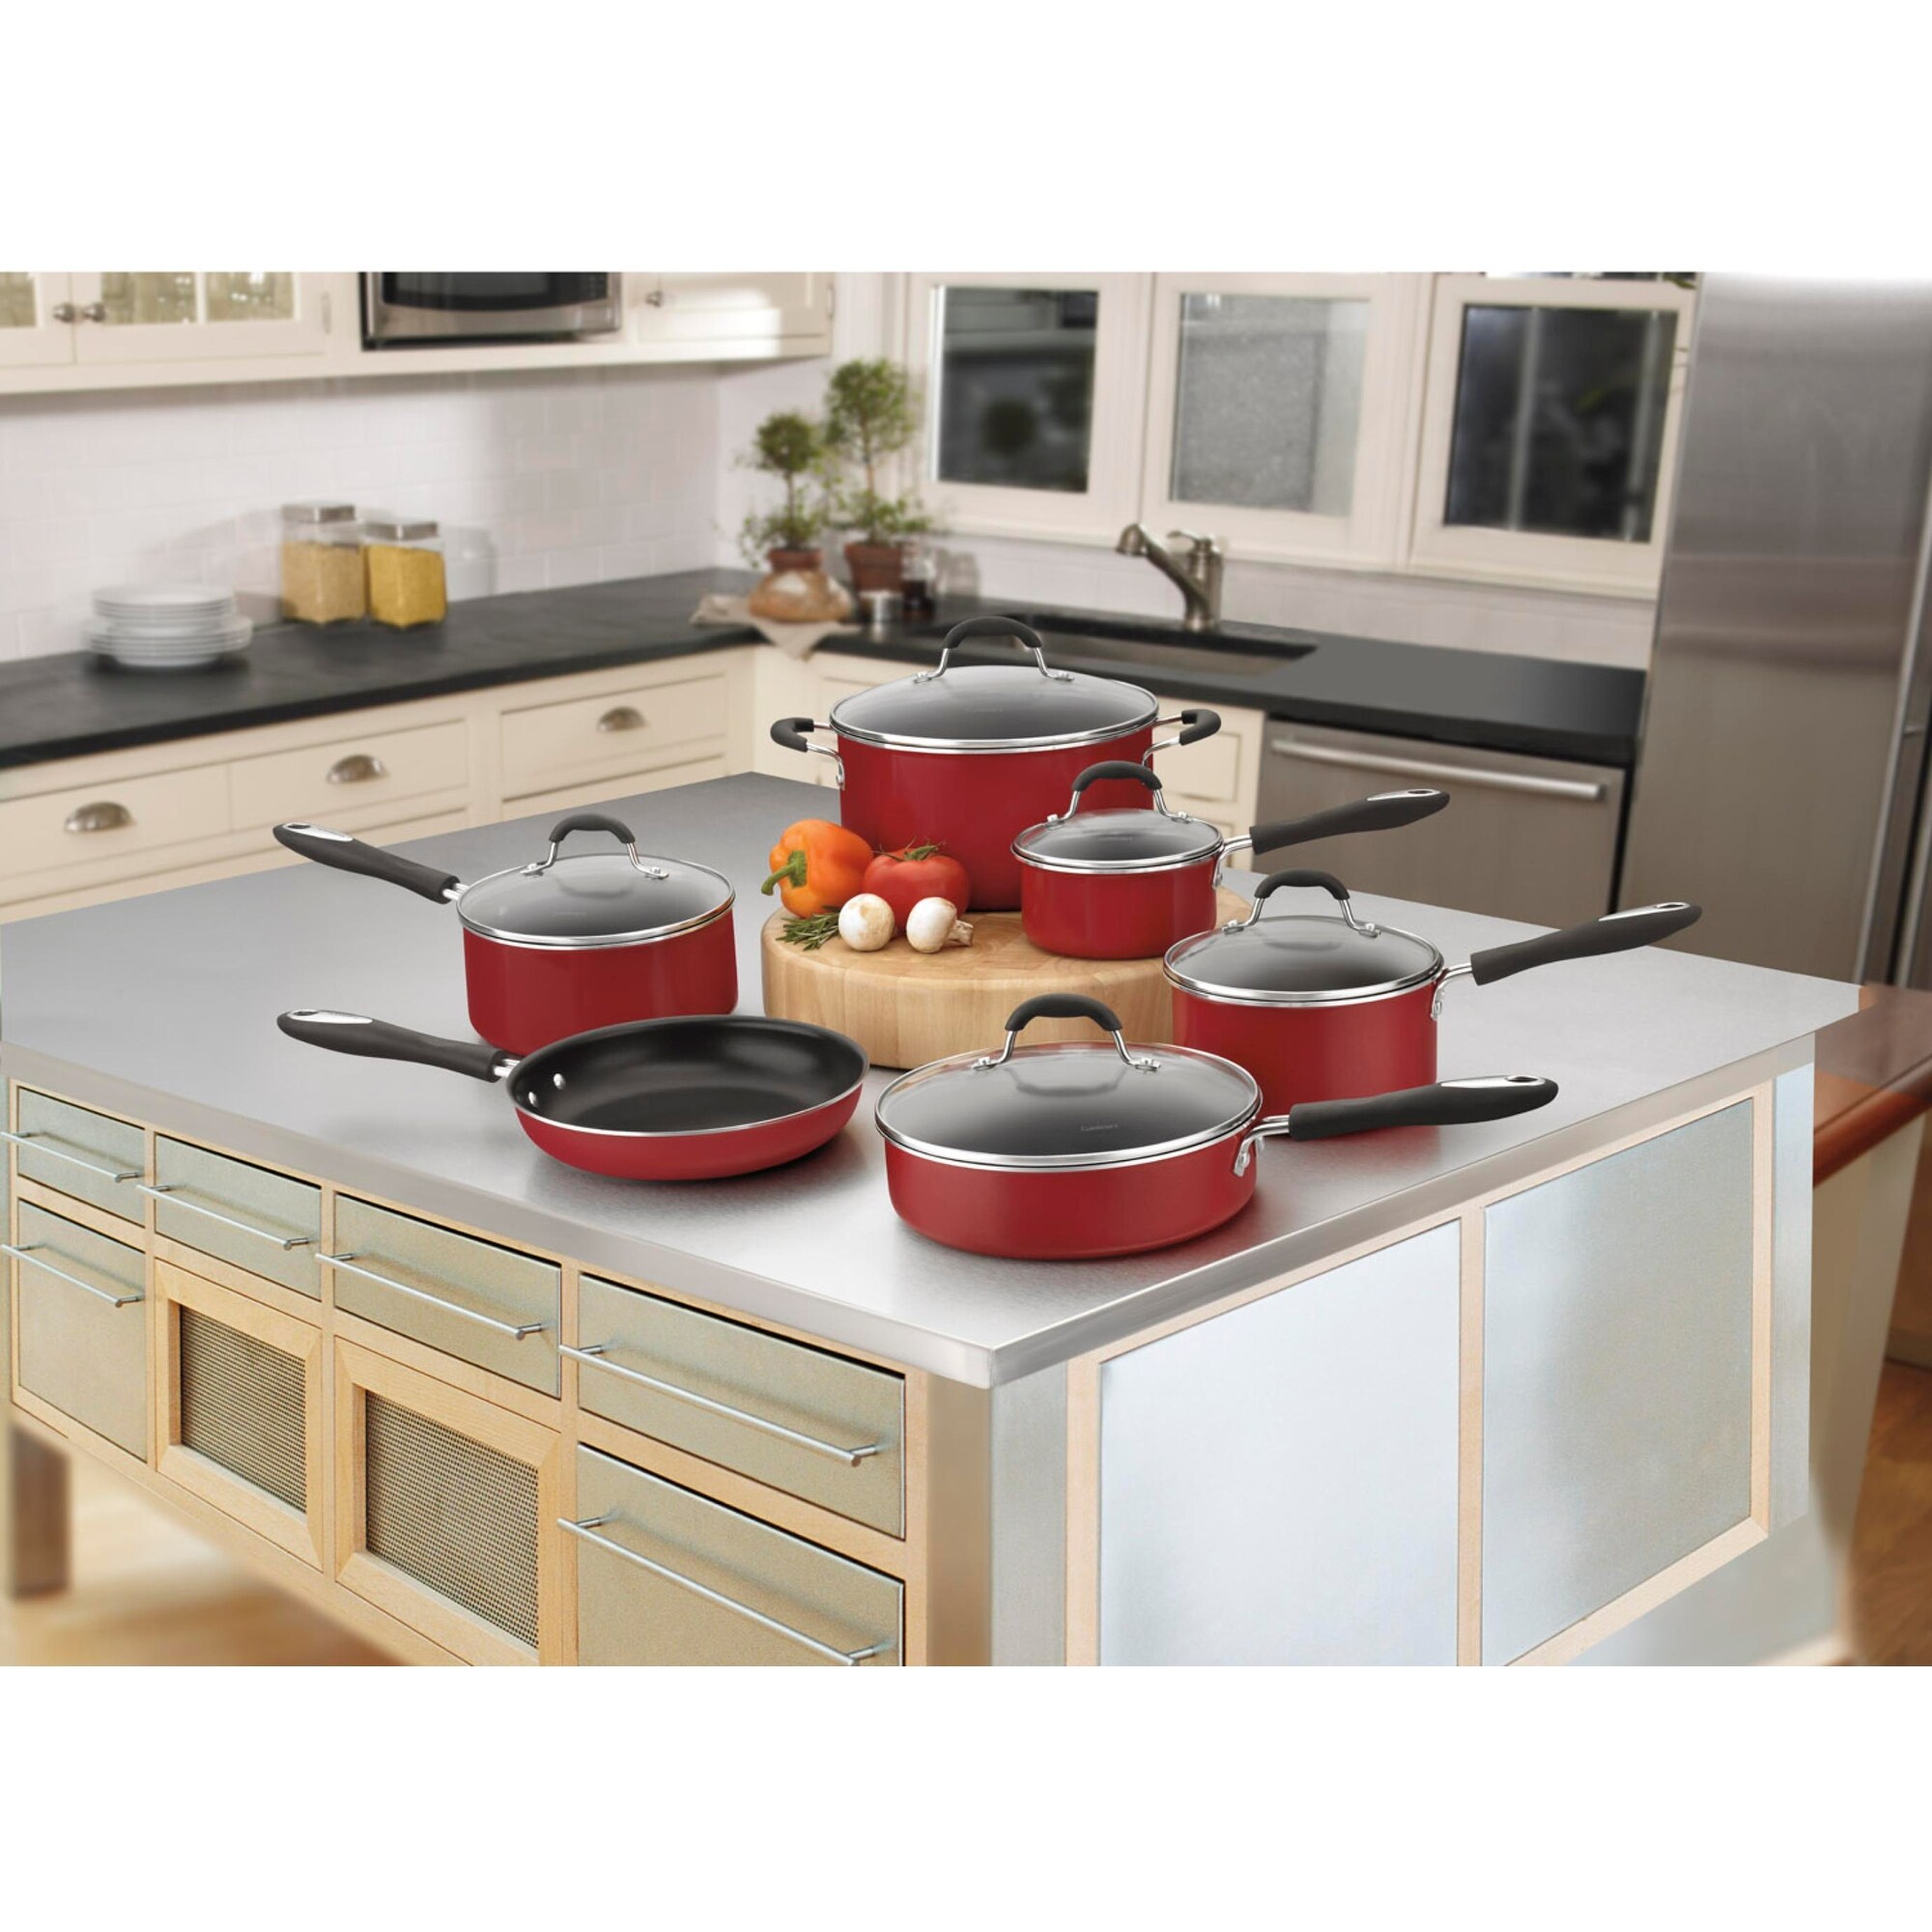 Cuisinart 11-Piece Ceramica XT Nonstick Cookware Set, Red